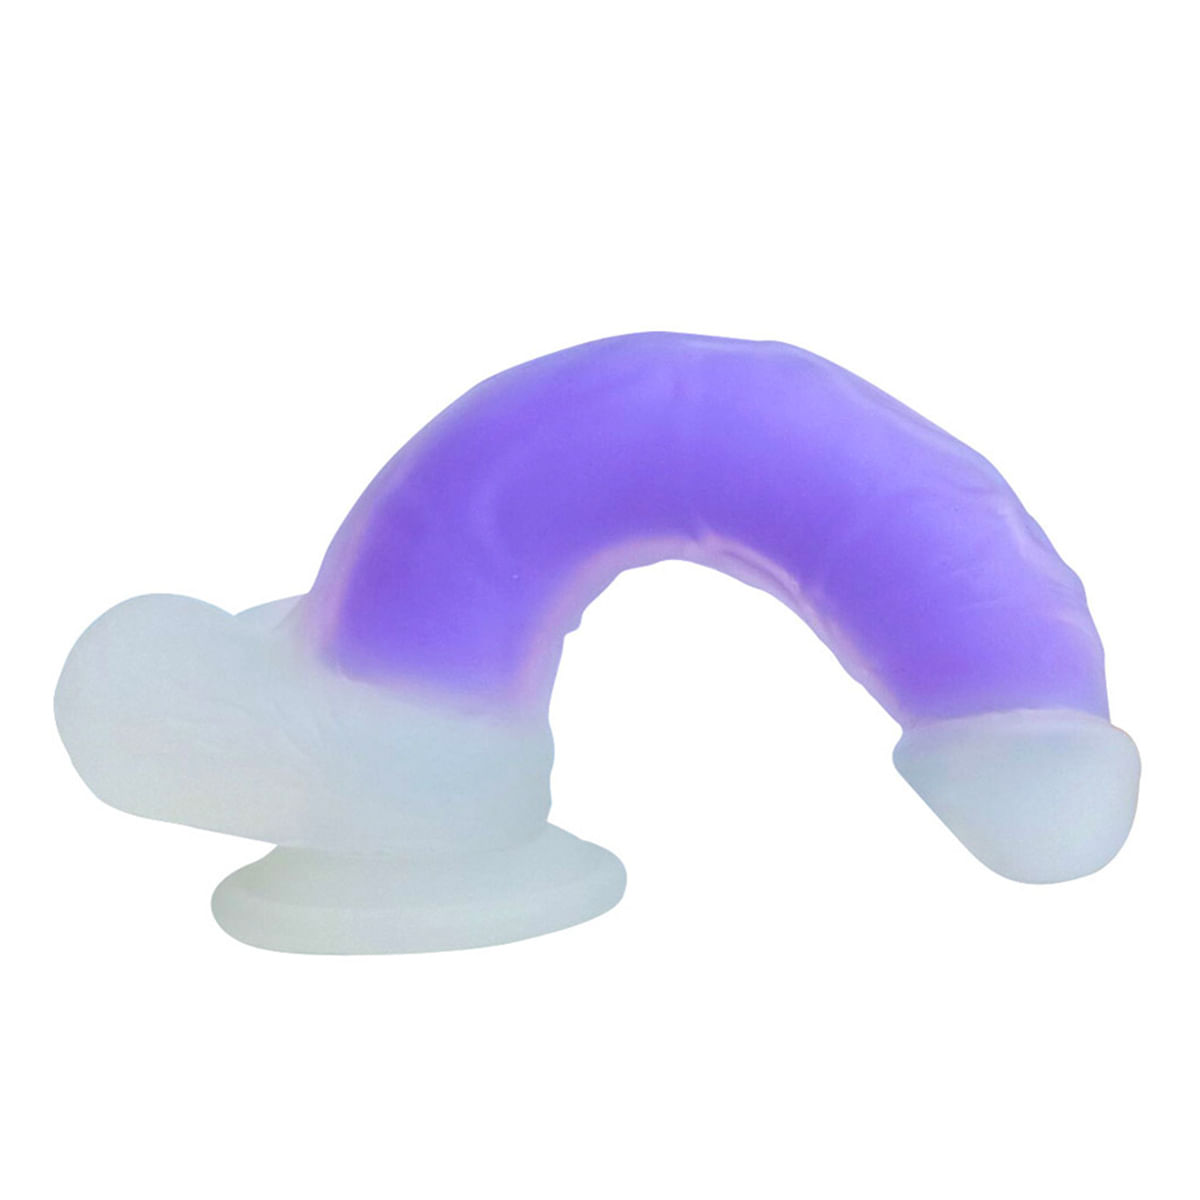 NV Toys Dildo Gode Prótese Realística Fluorescente com Glande Saltada e Ventosa Vip Mix